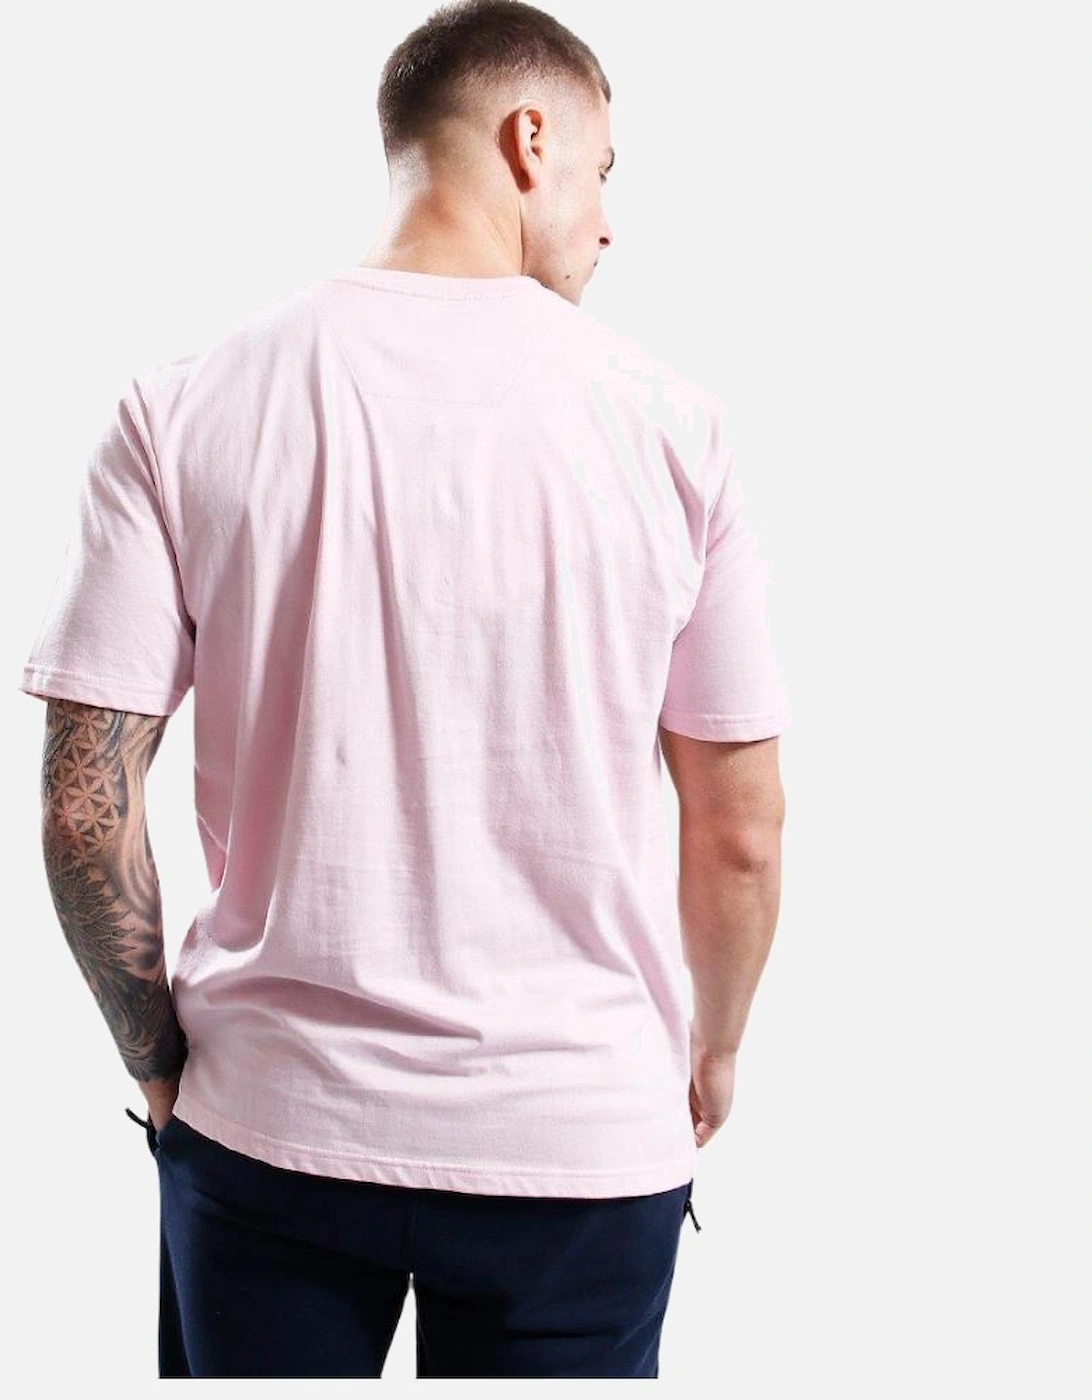 Siren T-Shirt - Pink